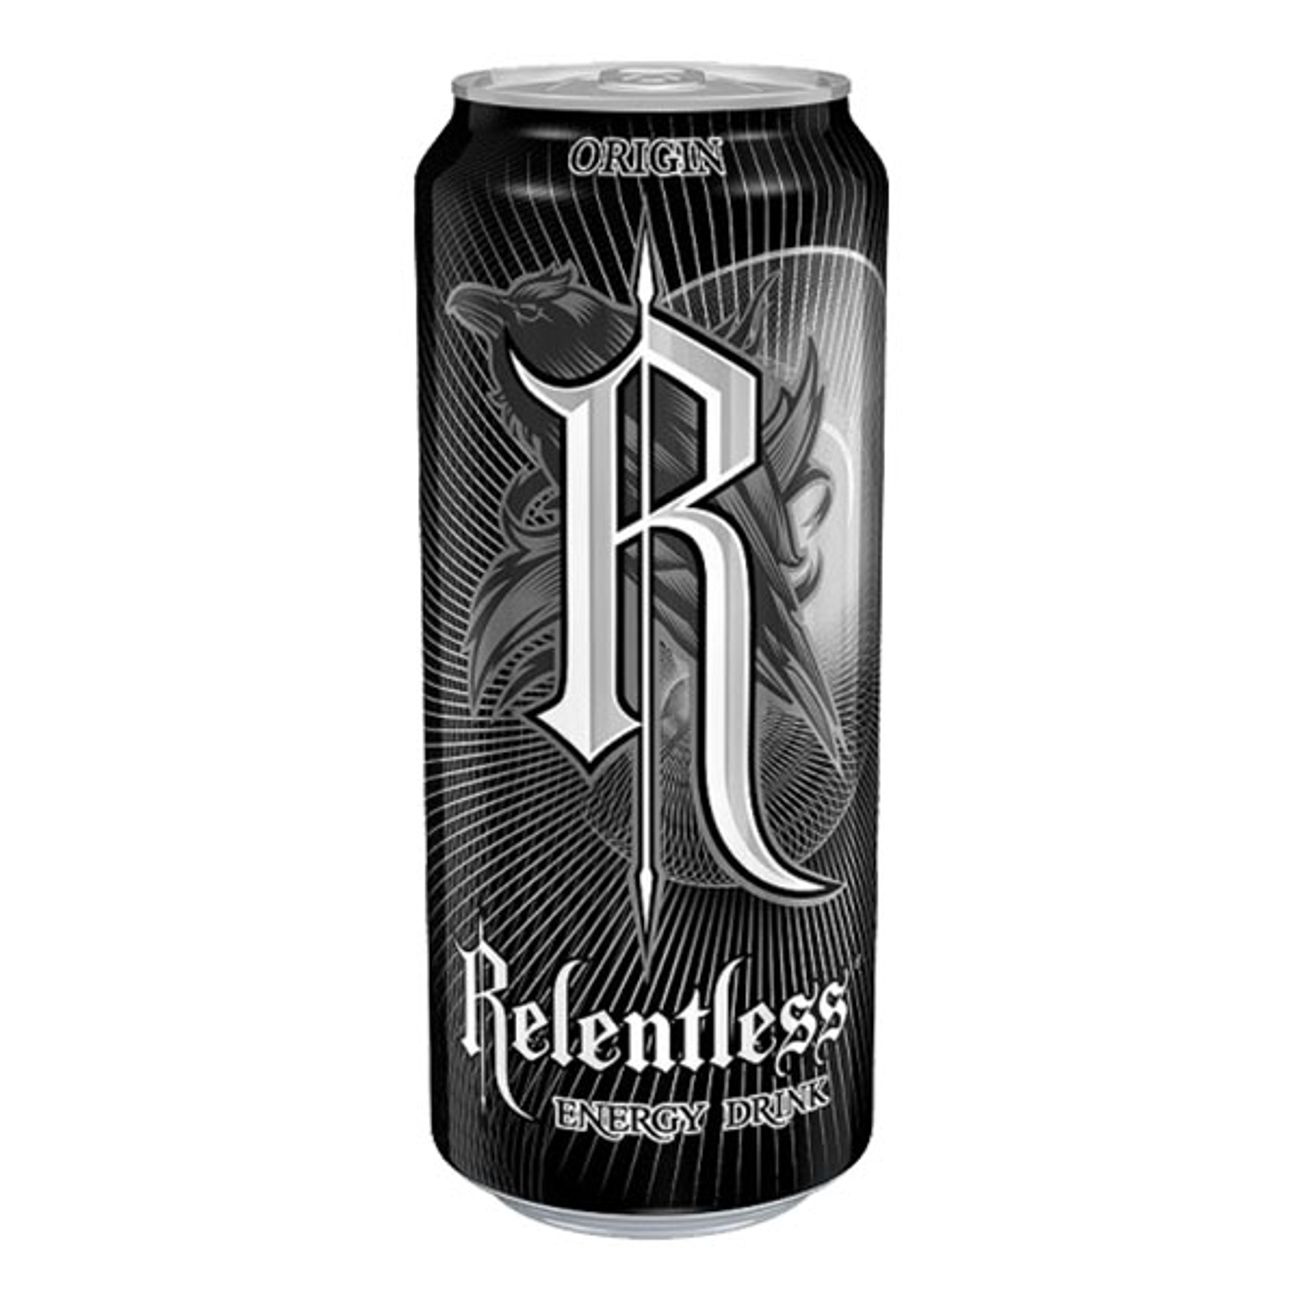 relentless-origin-1